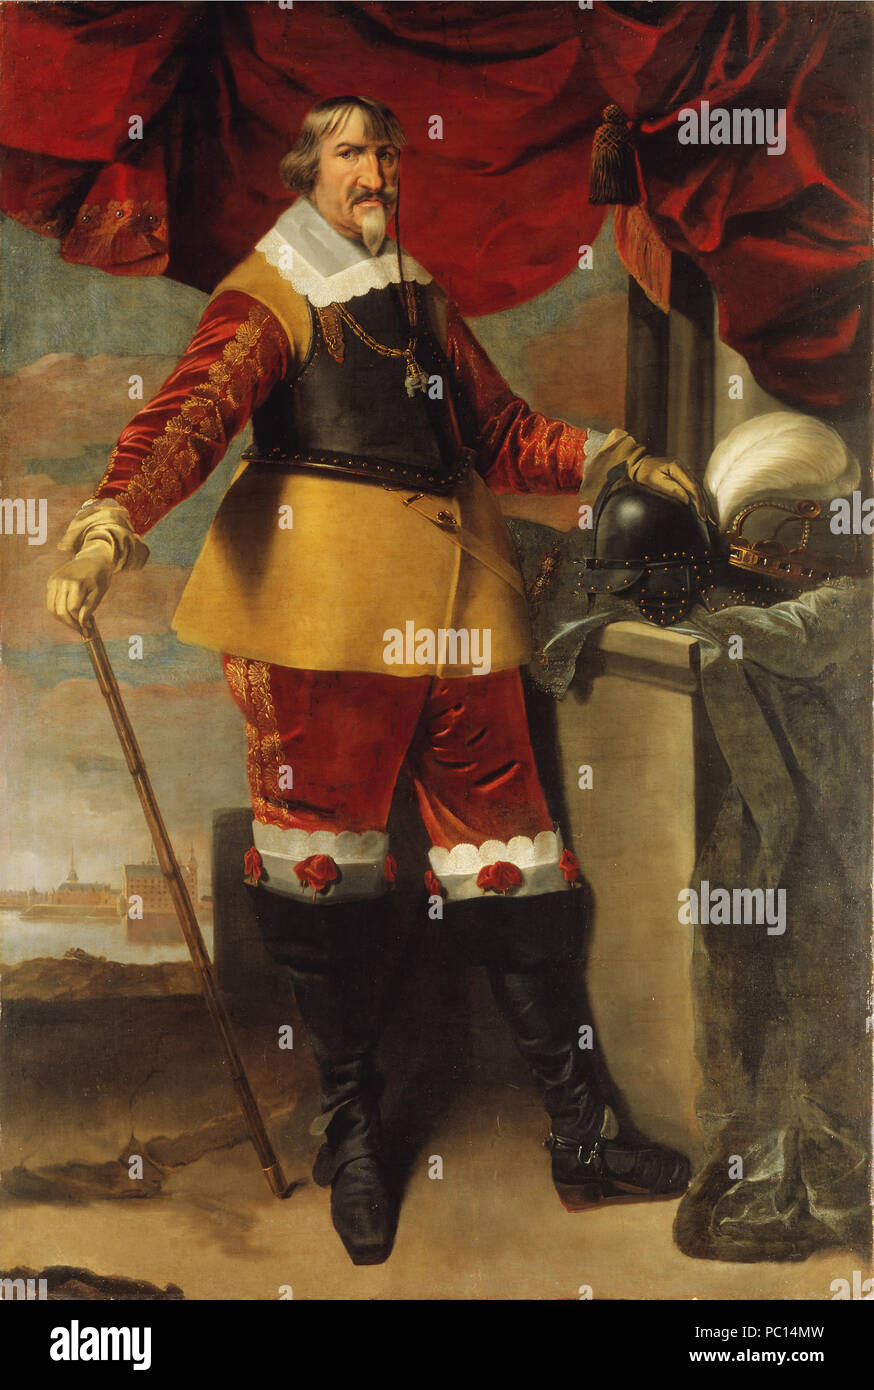 54 König Christian IV. von Dänemark, 1577-1648 (Karel van Mander) - Nationalmuseum - 17506 Stockfoto